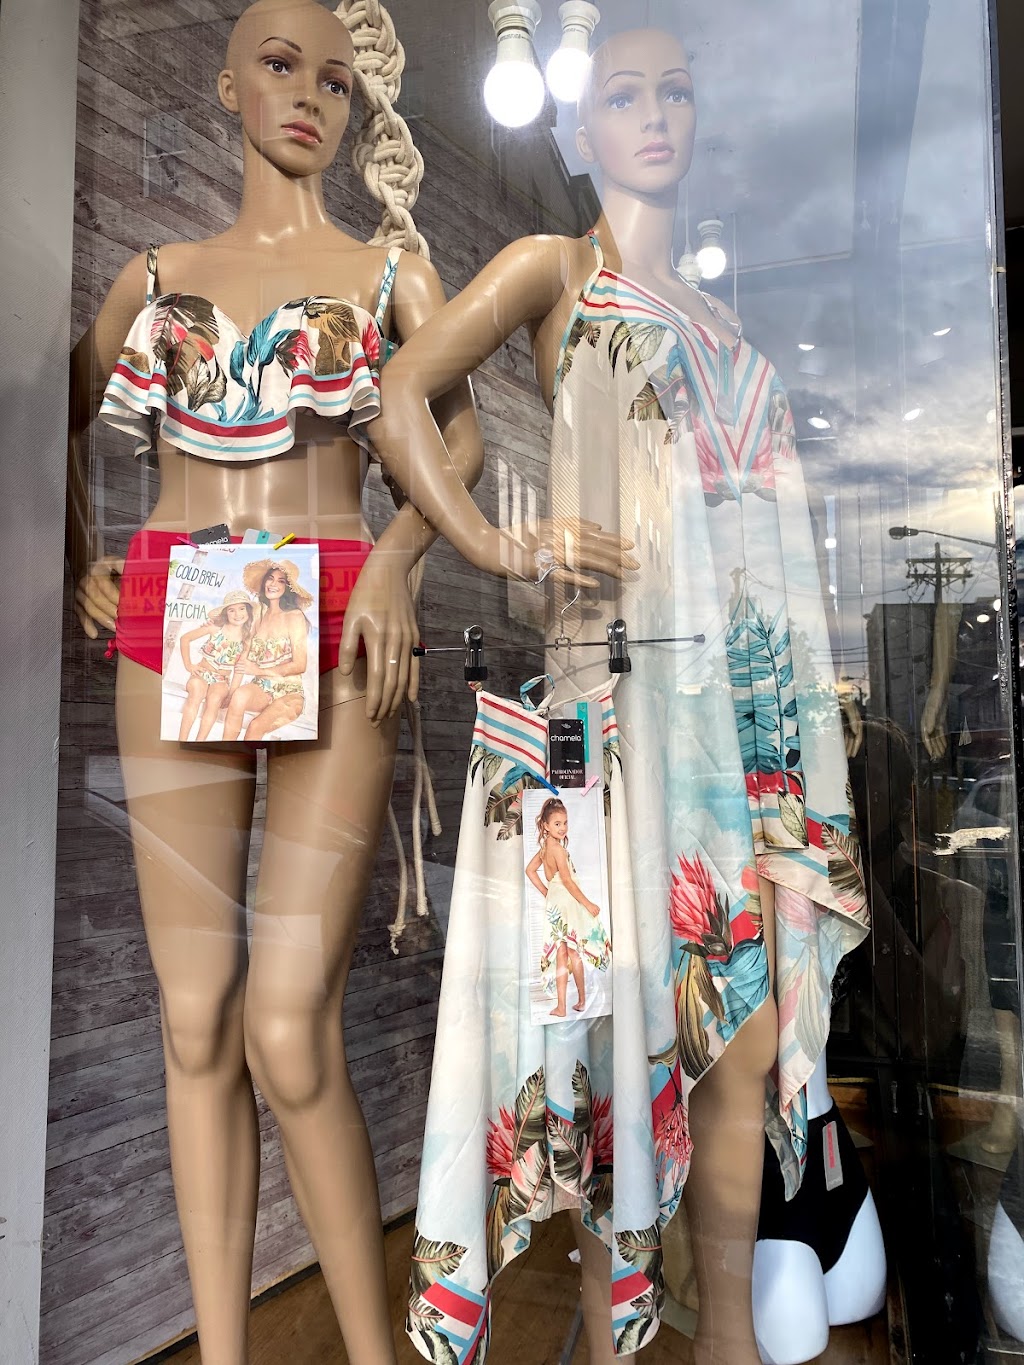 Fashion Magical Boutique | 7000 Boulevard E #32c, Guttenberg, NJ 07093 | Phone: (201) 321-8719